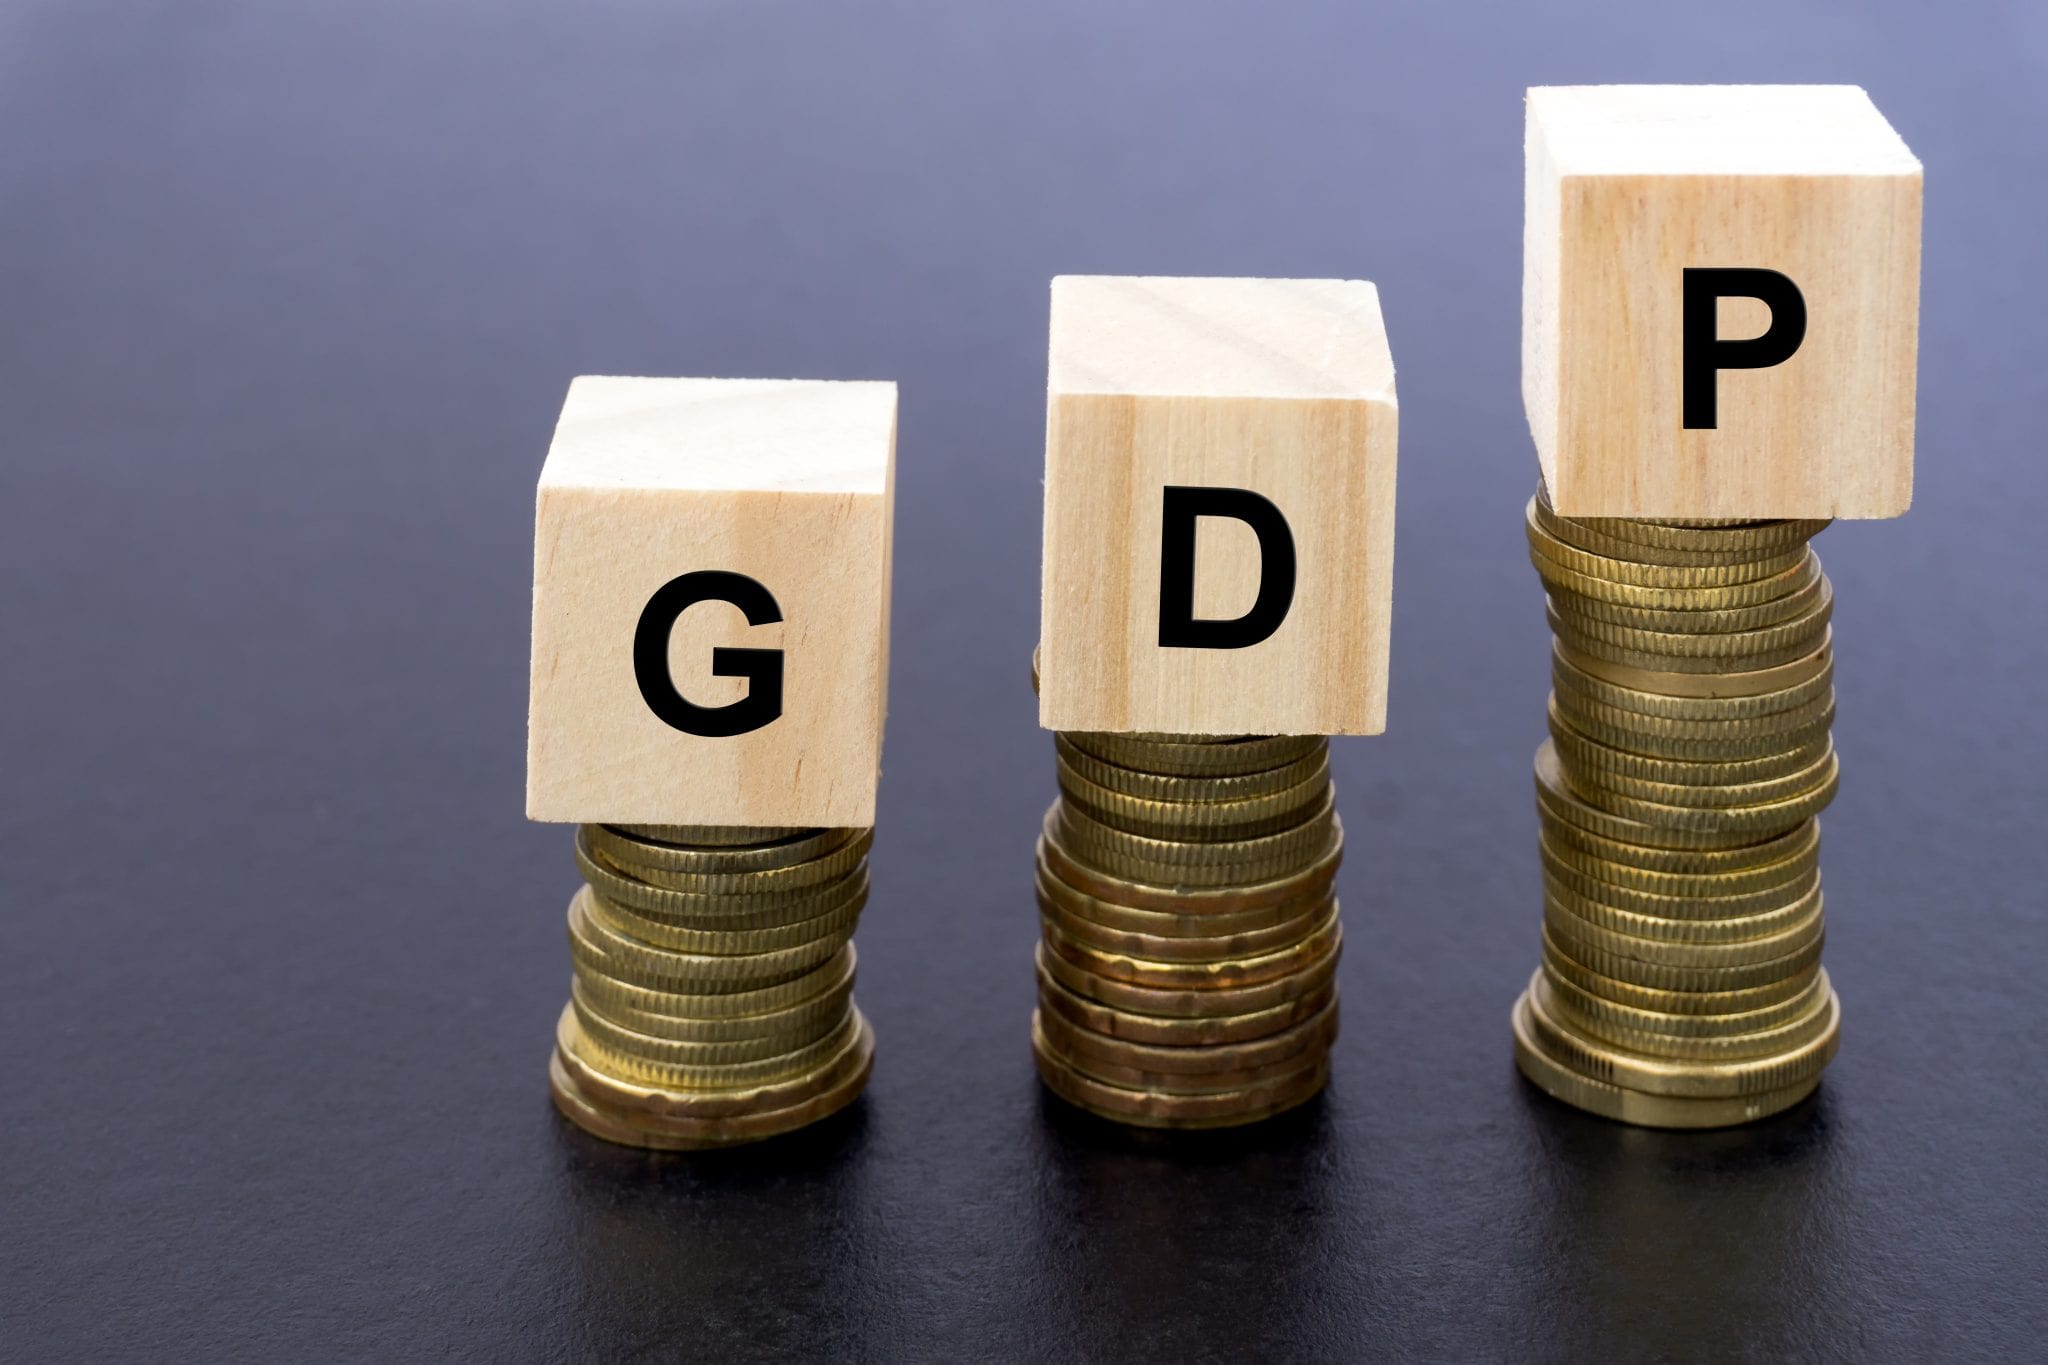 Khái niệm về GDP danh nghĩa bạn cần biết gì?